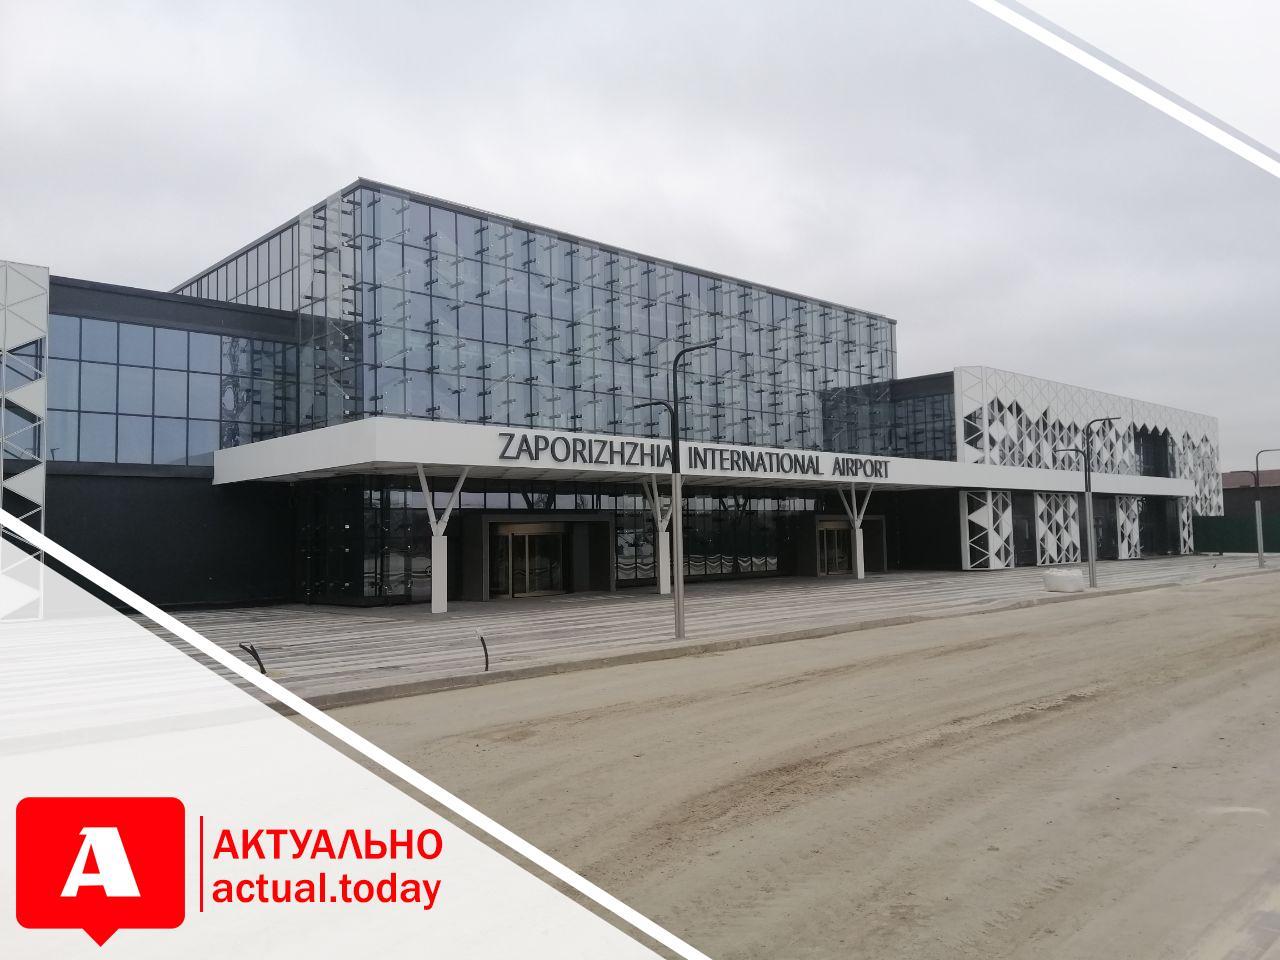 Осталась подпись ГАСИ: терминал запорожского аэропорта скоро будет готов принимать пассажиров